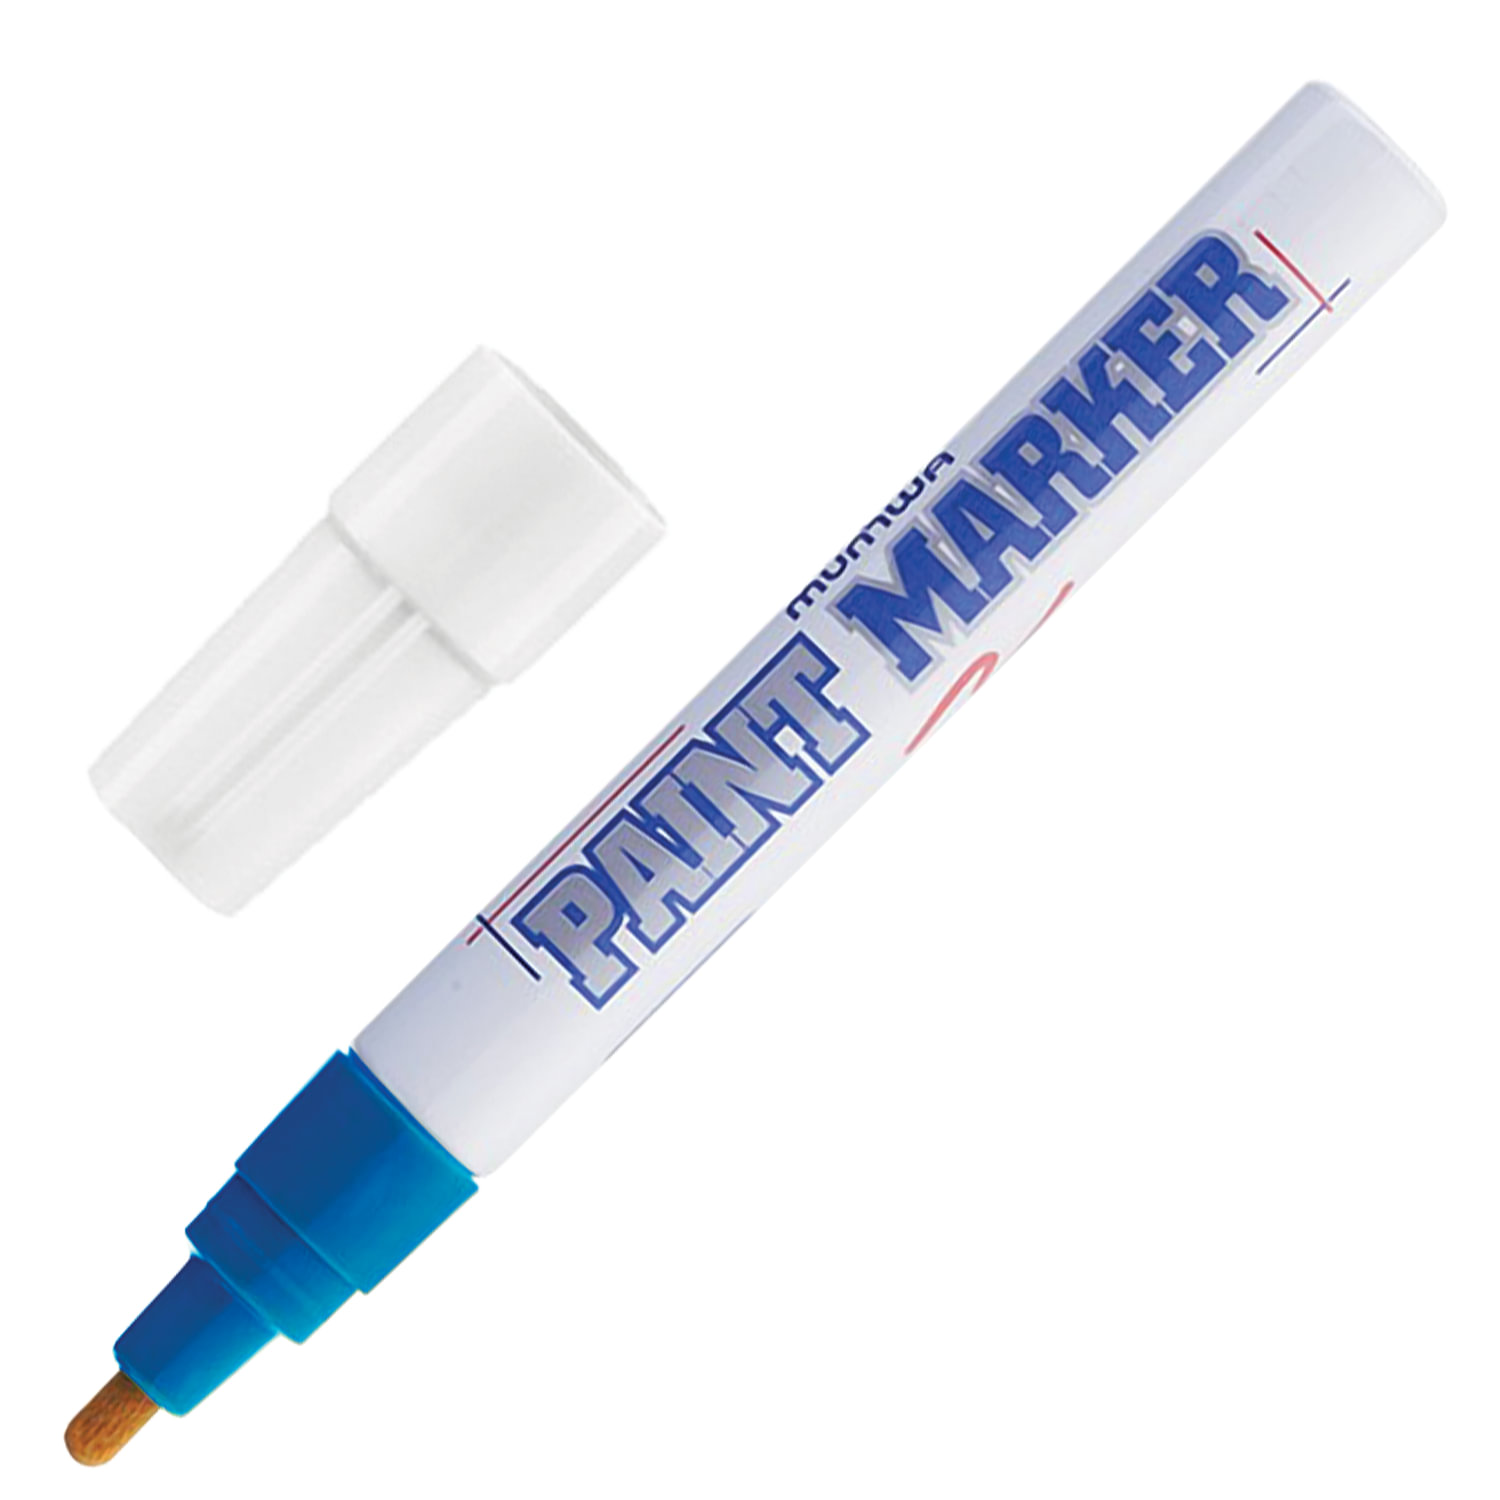 Маркер-краска лаковый (paint marker) MUNHWA, 4 мм, СИНИЙ, нитро-основа, алюминиевый корпус, PM-02 купите по выгодной цене